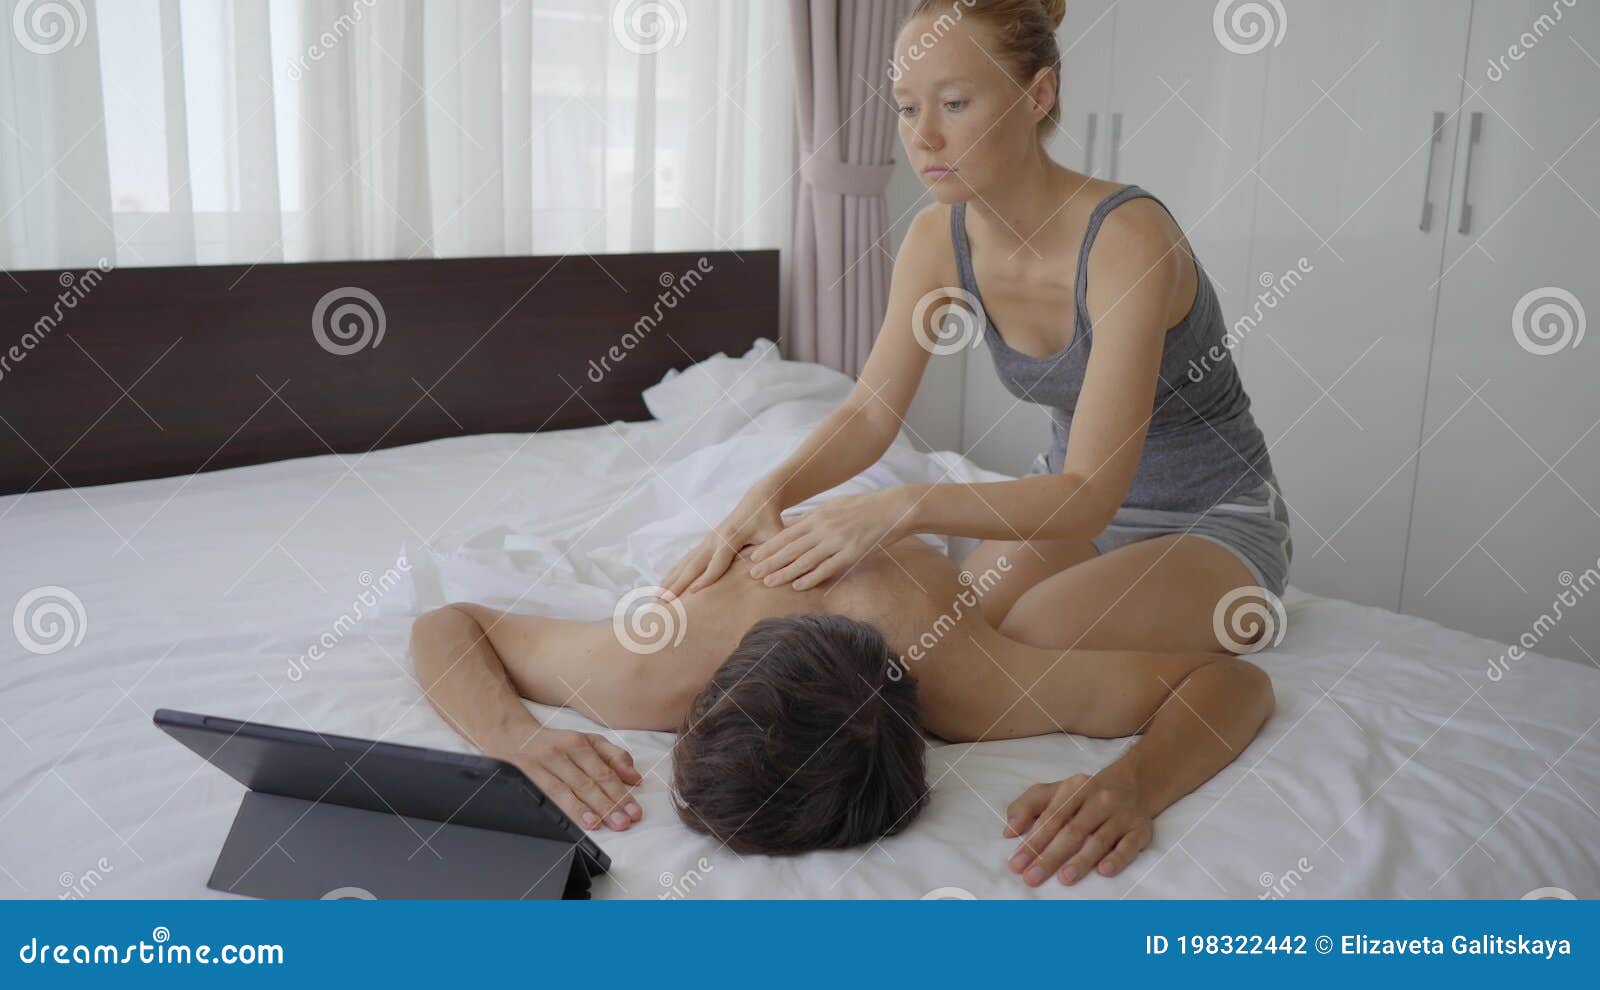 watching wife get massage